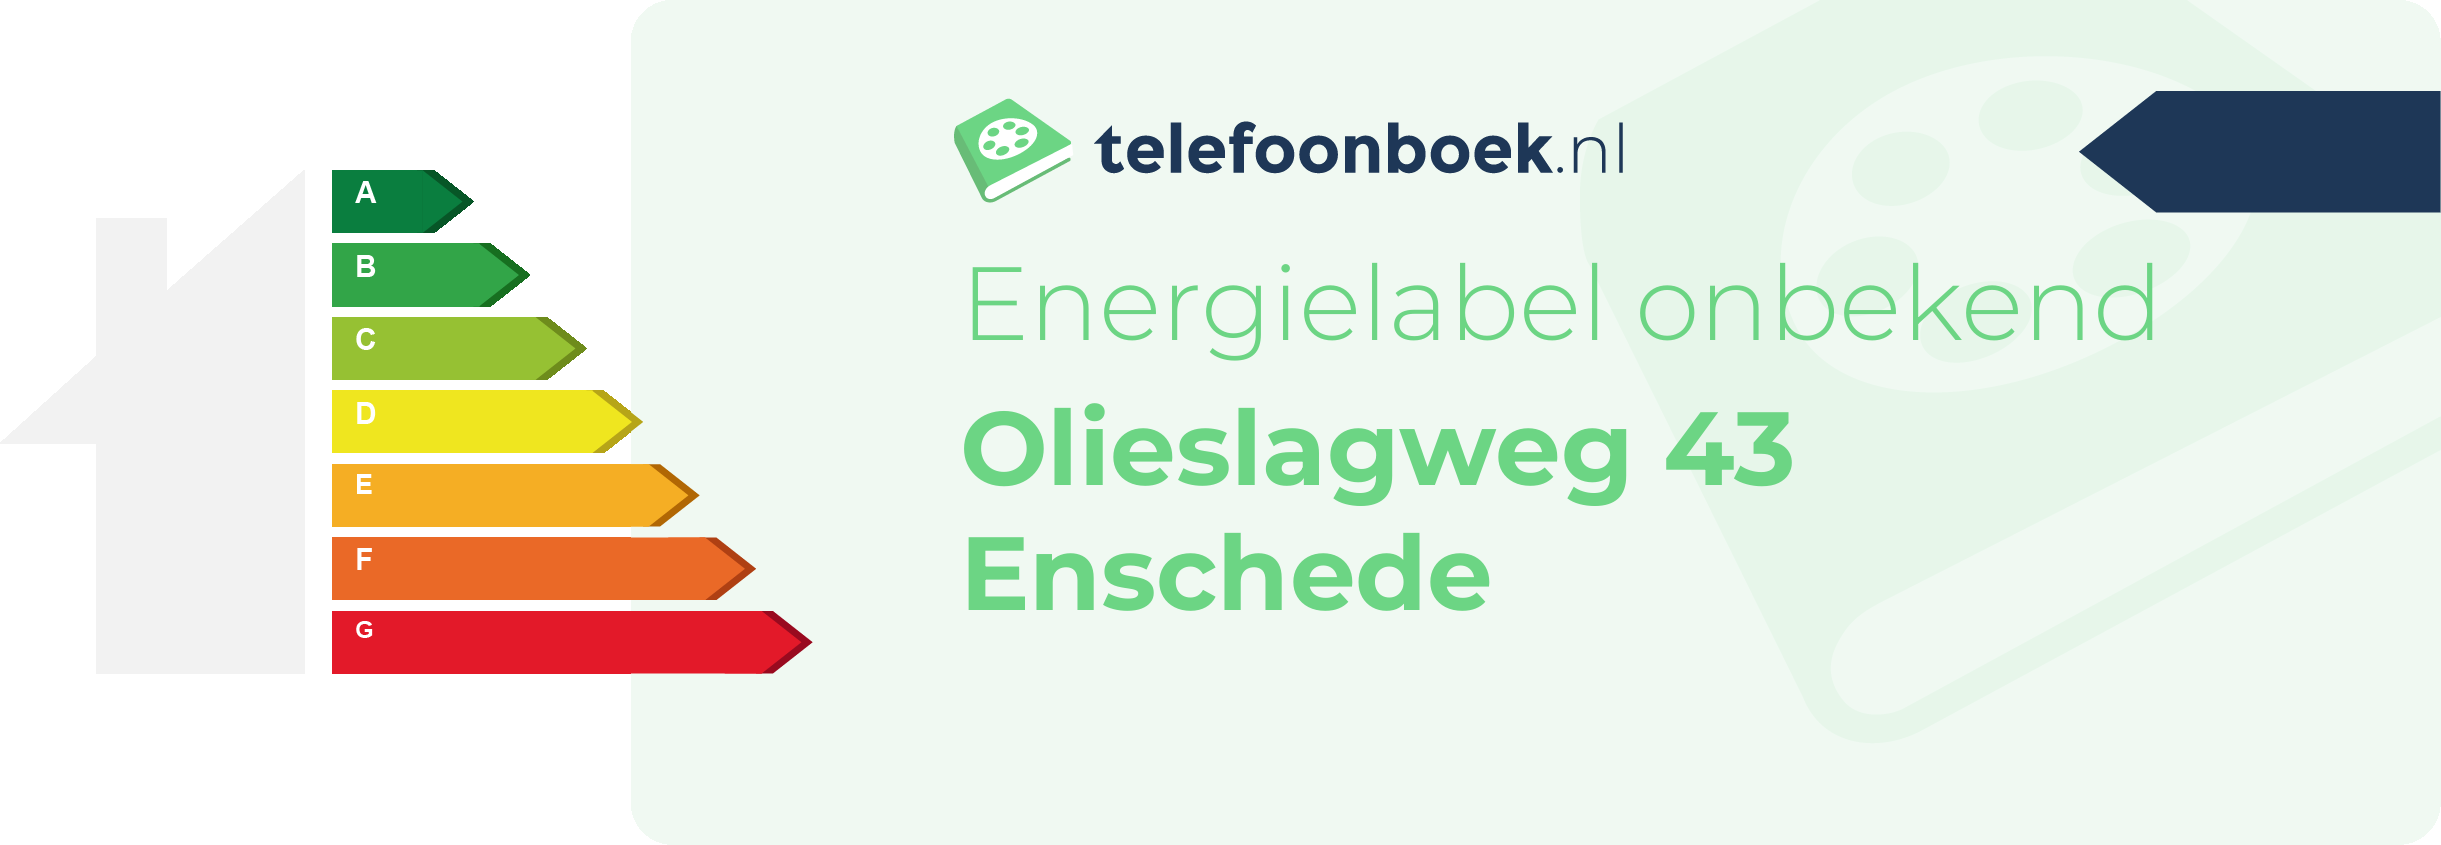 Energielabel Olieslagweg 43 Enschede